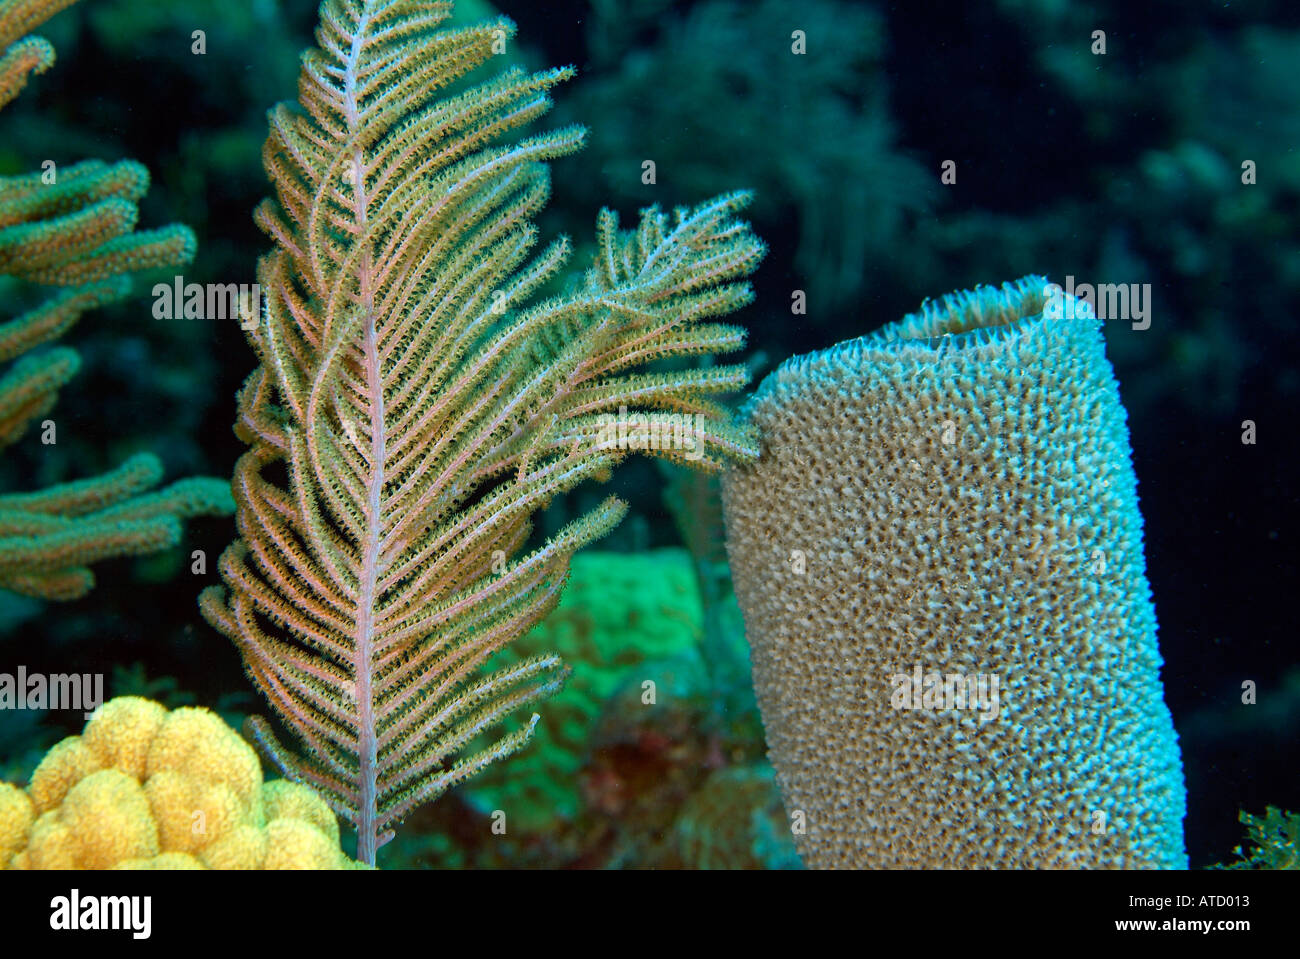 Branching vase sponge, off Bimini Island, Bahamas Stock Photo - Alamy